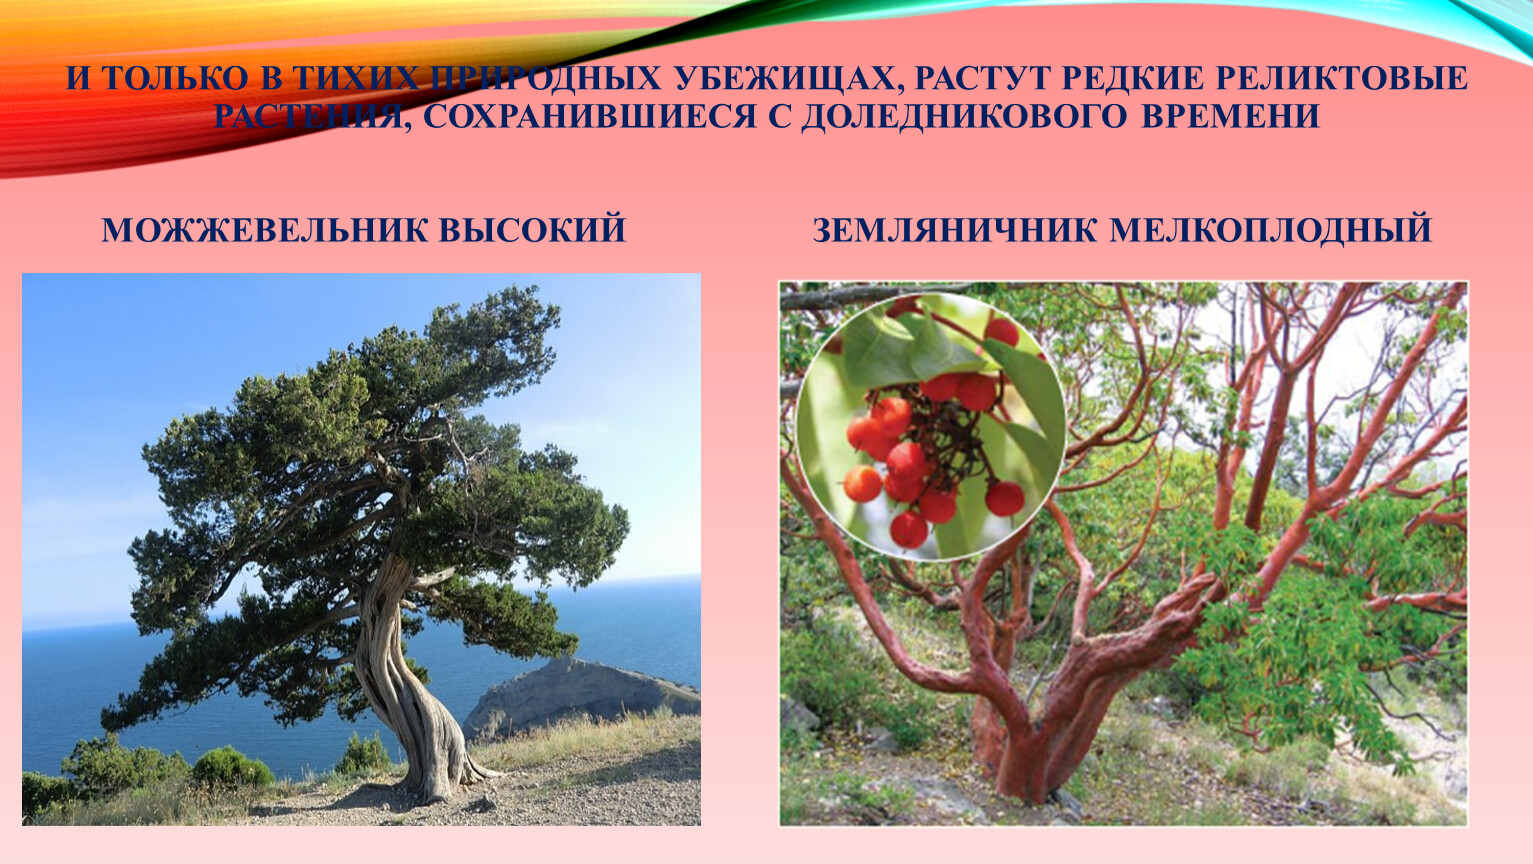 Реликтовые растения Крыма